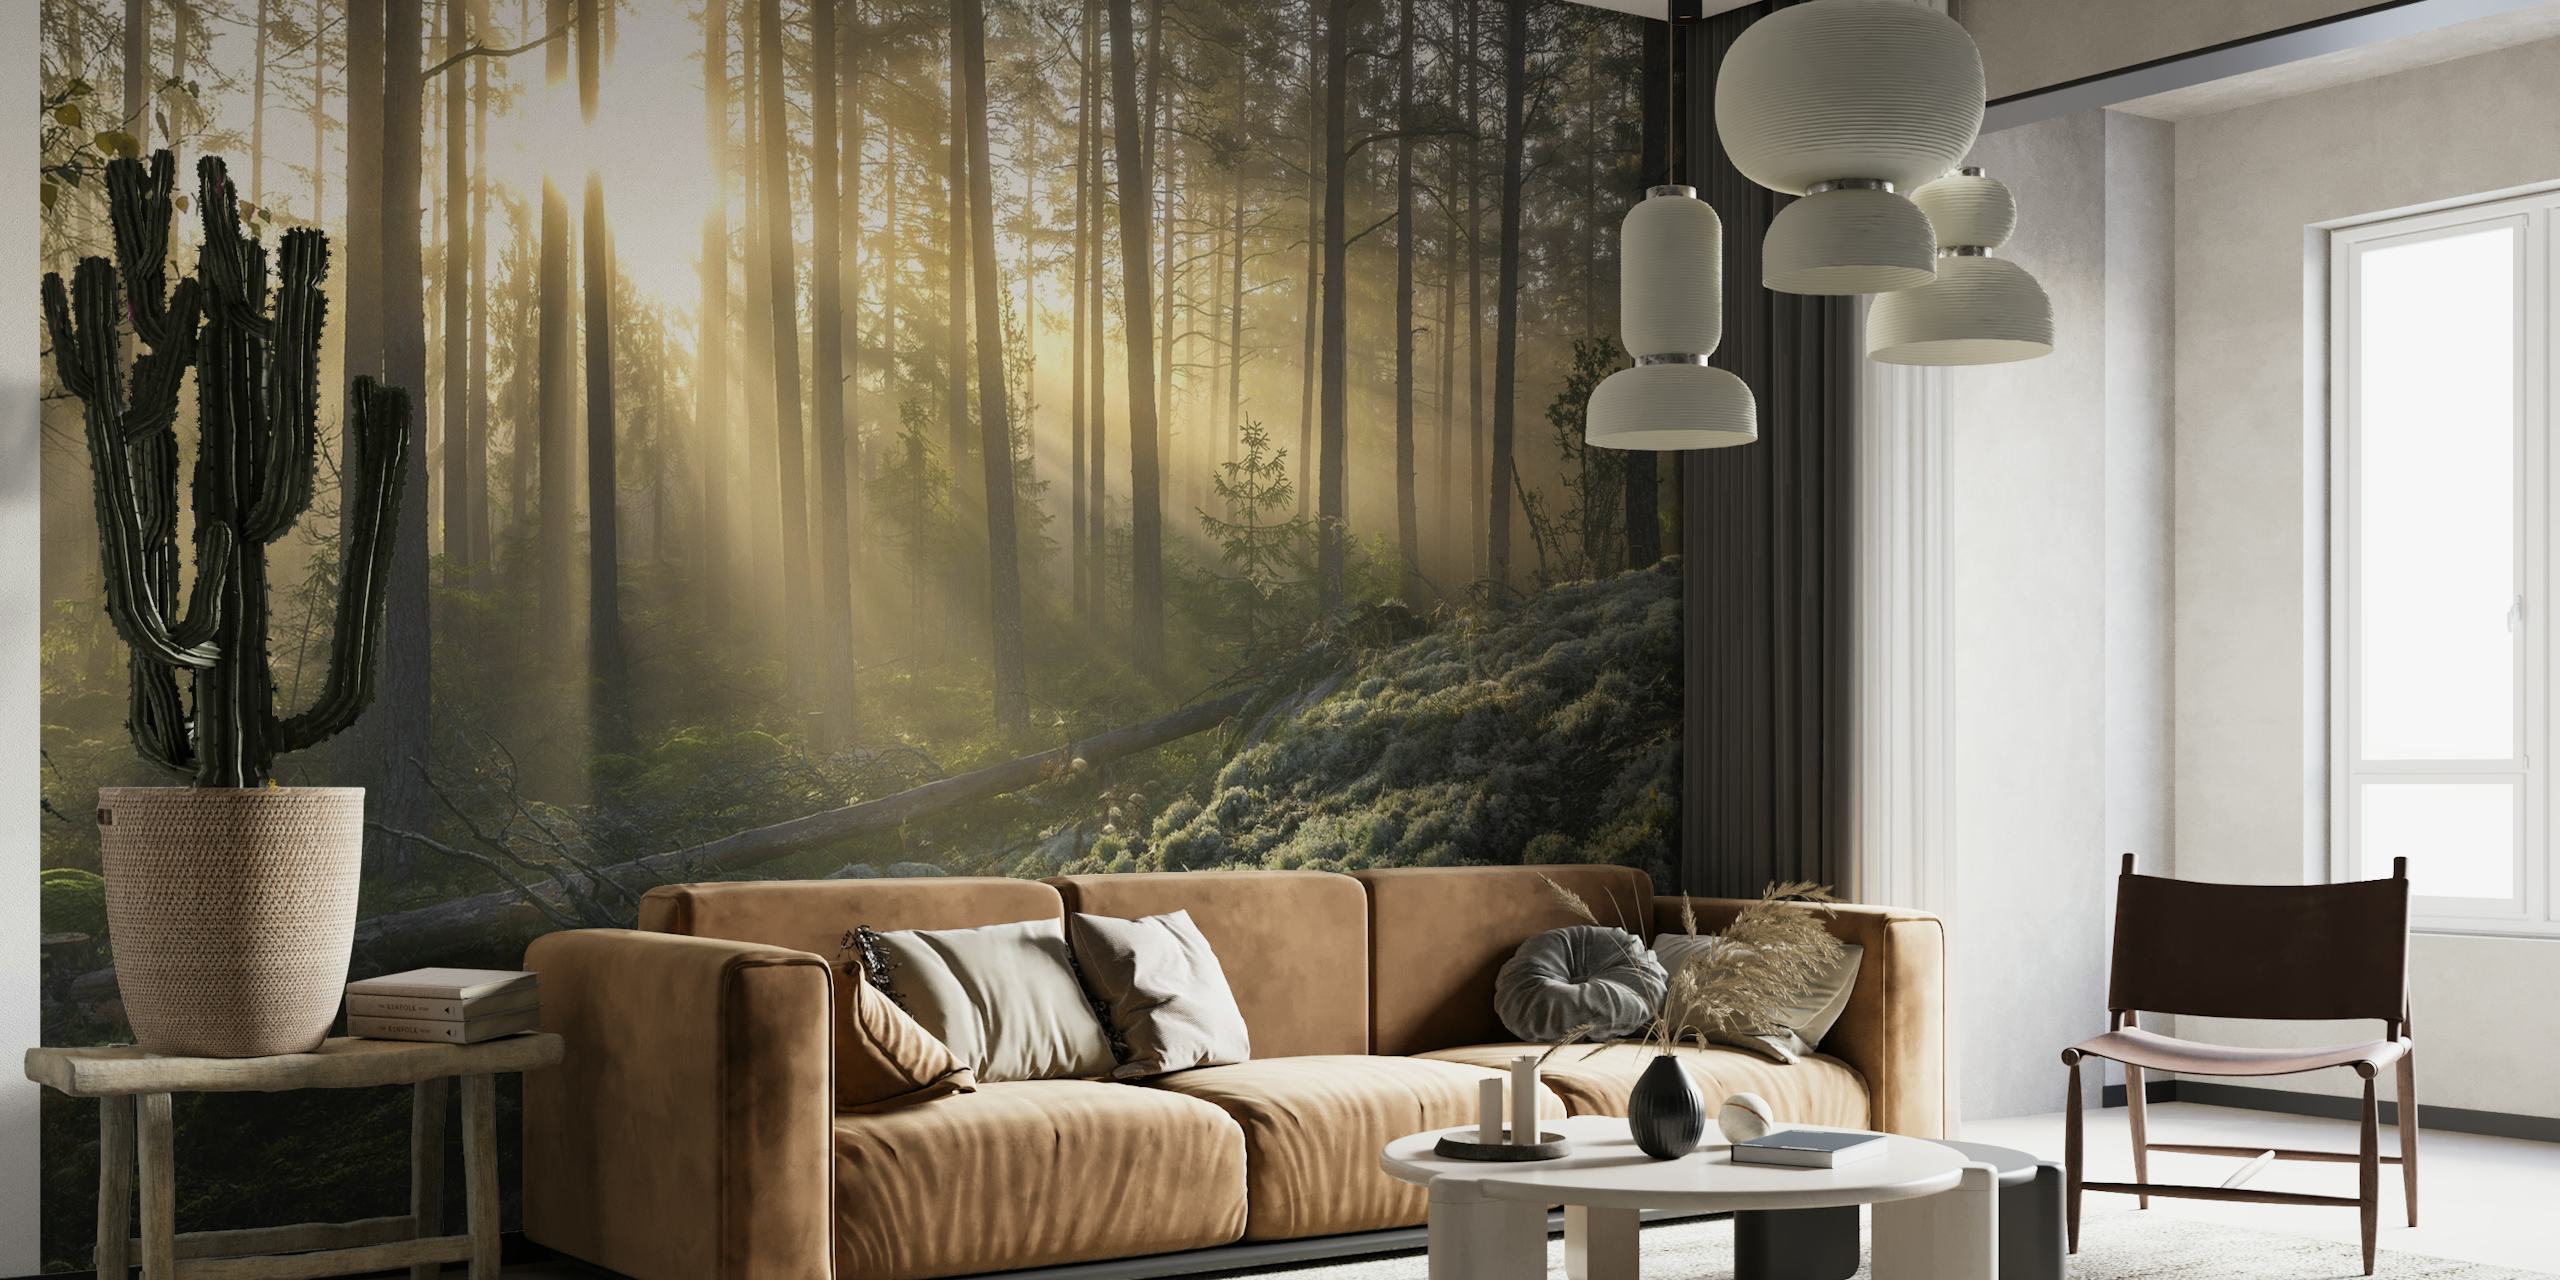 Maglovita šuma sa sunčevom svjetlošću koja prodire kroz drveće i zidni mural u prvom planu s bijelom mahovinom